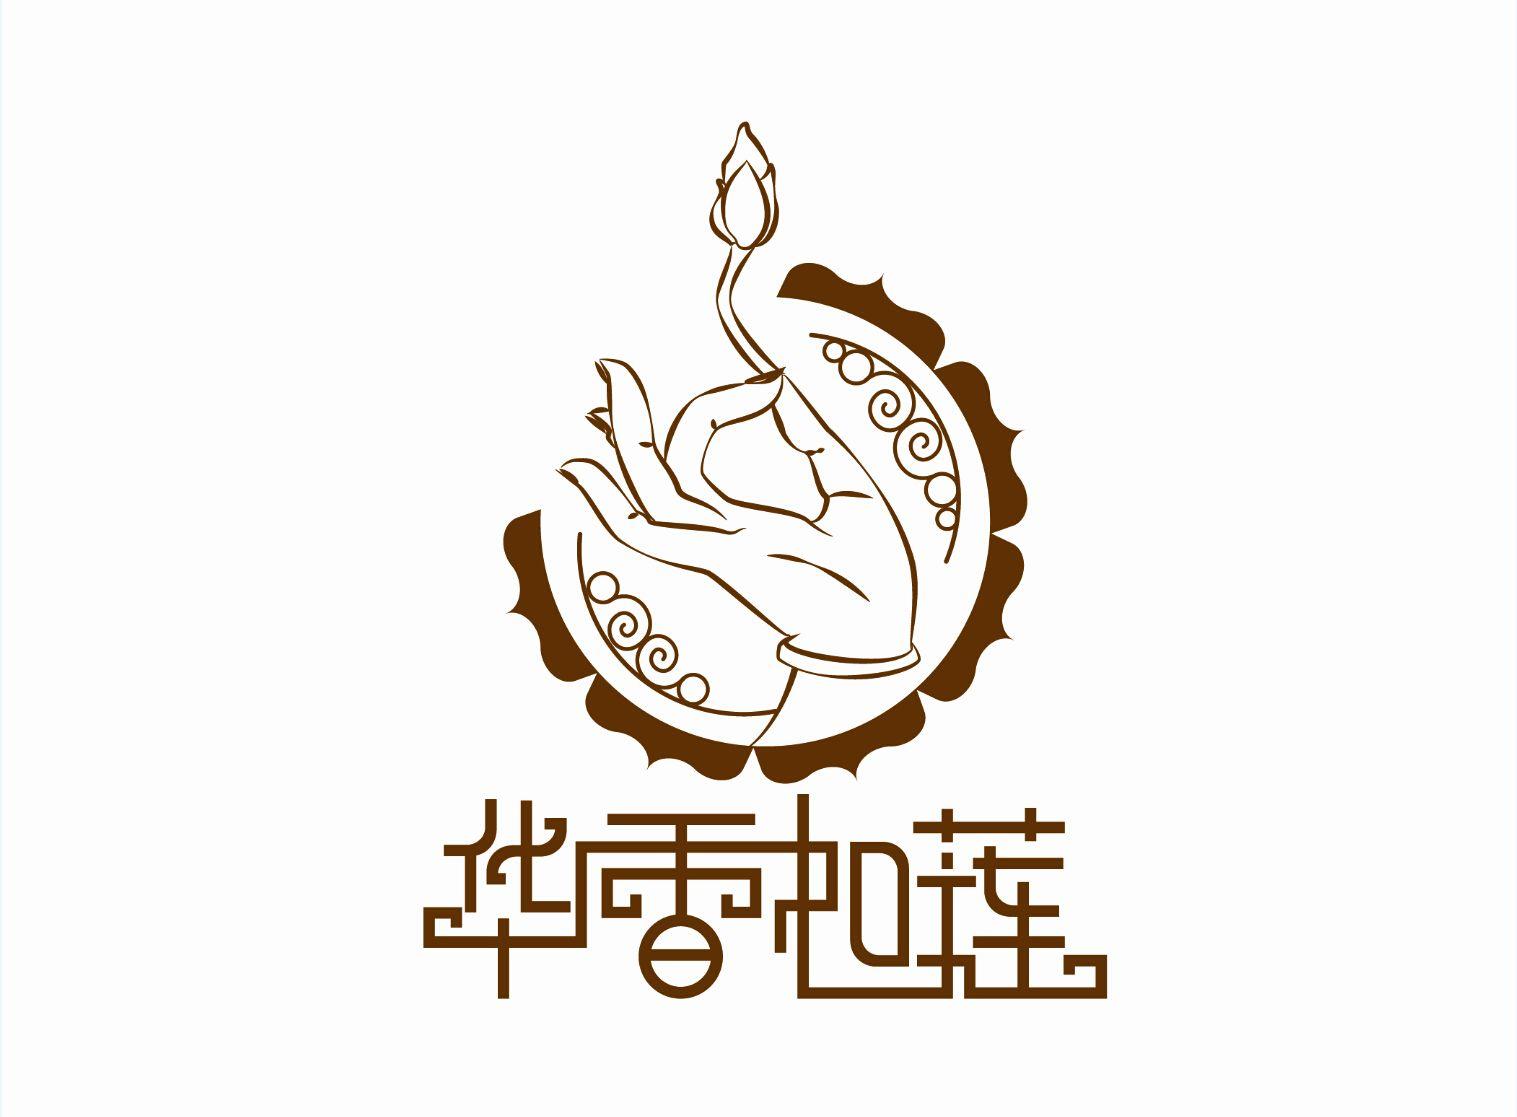 Buddhist Logo - logo lotus；buddha | logo | Logos, Buddha logo, Buddha